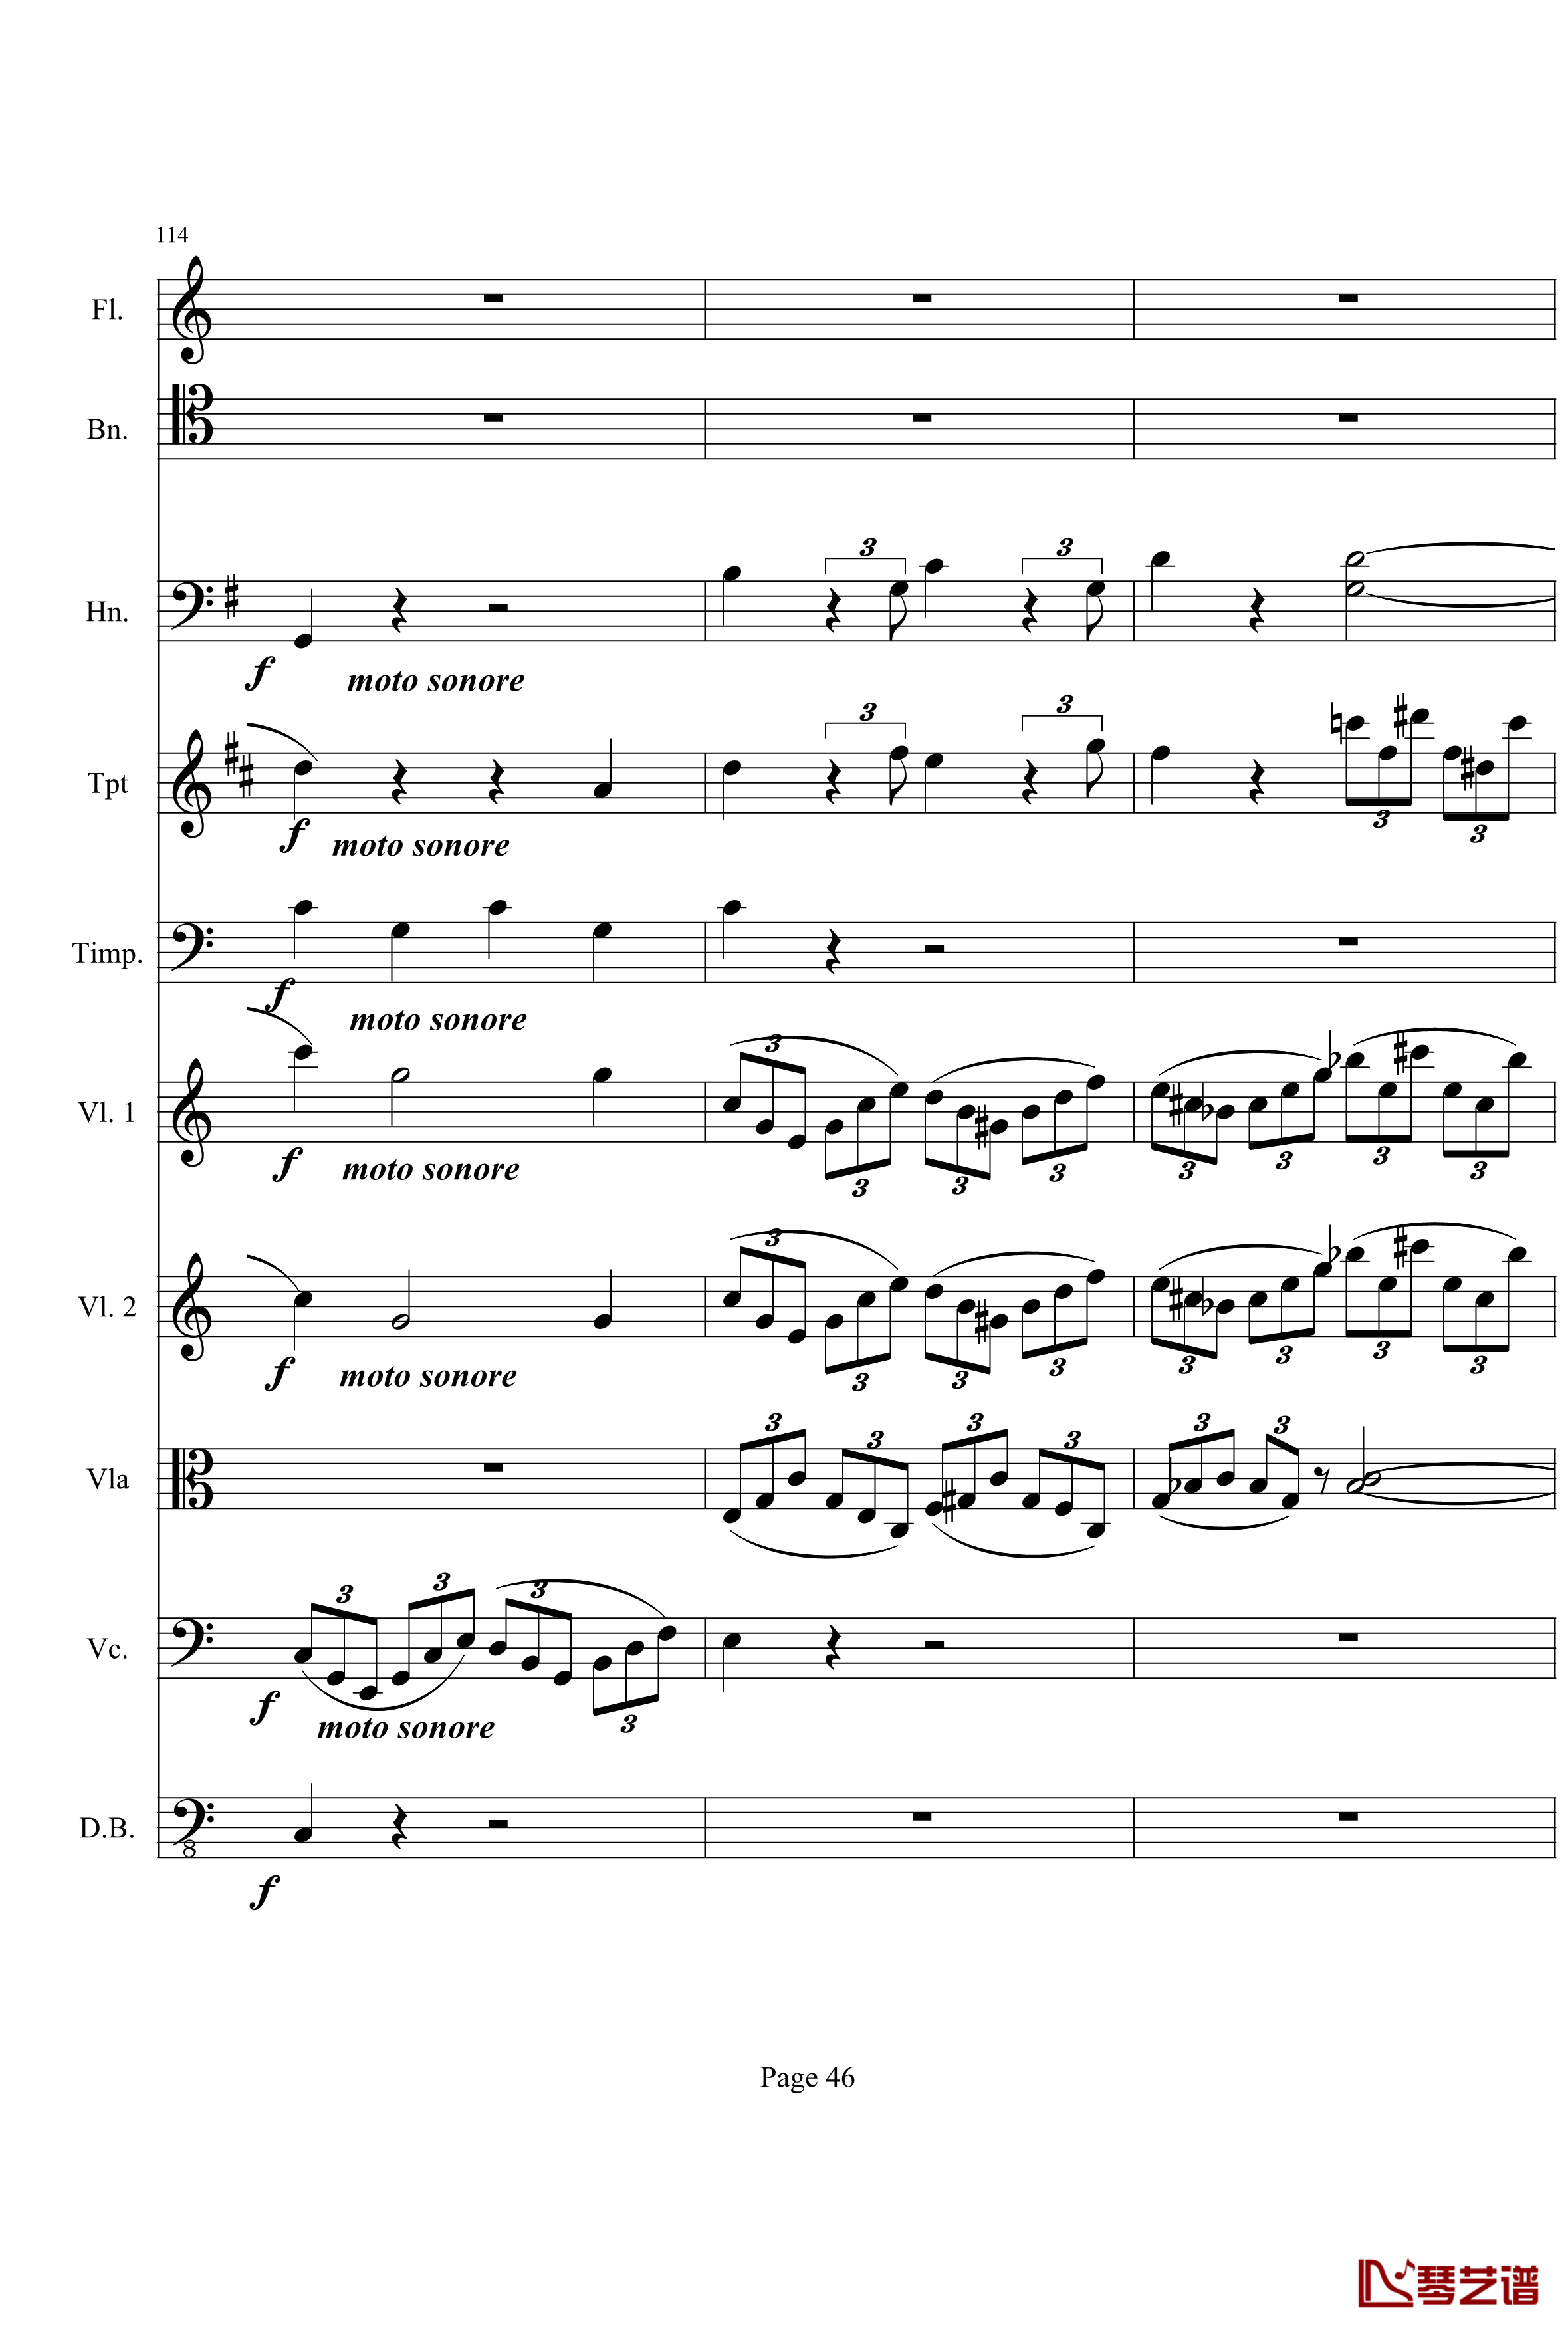 奏鸣曲之交响钢琴谱-第21-Ⅰ-贝多芬-beethoven46